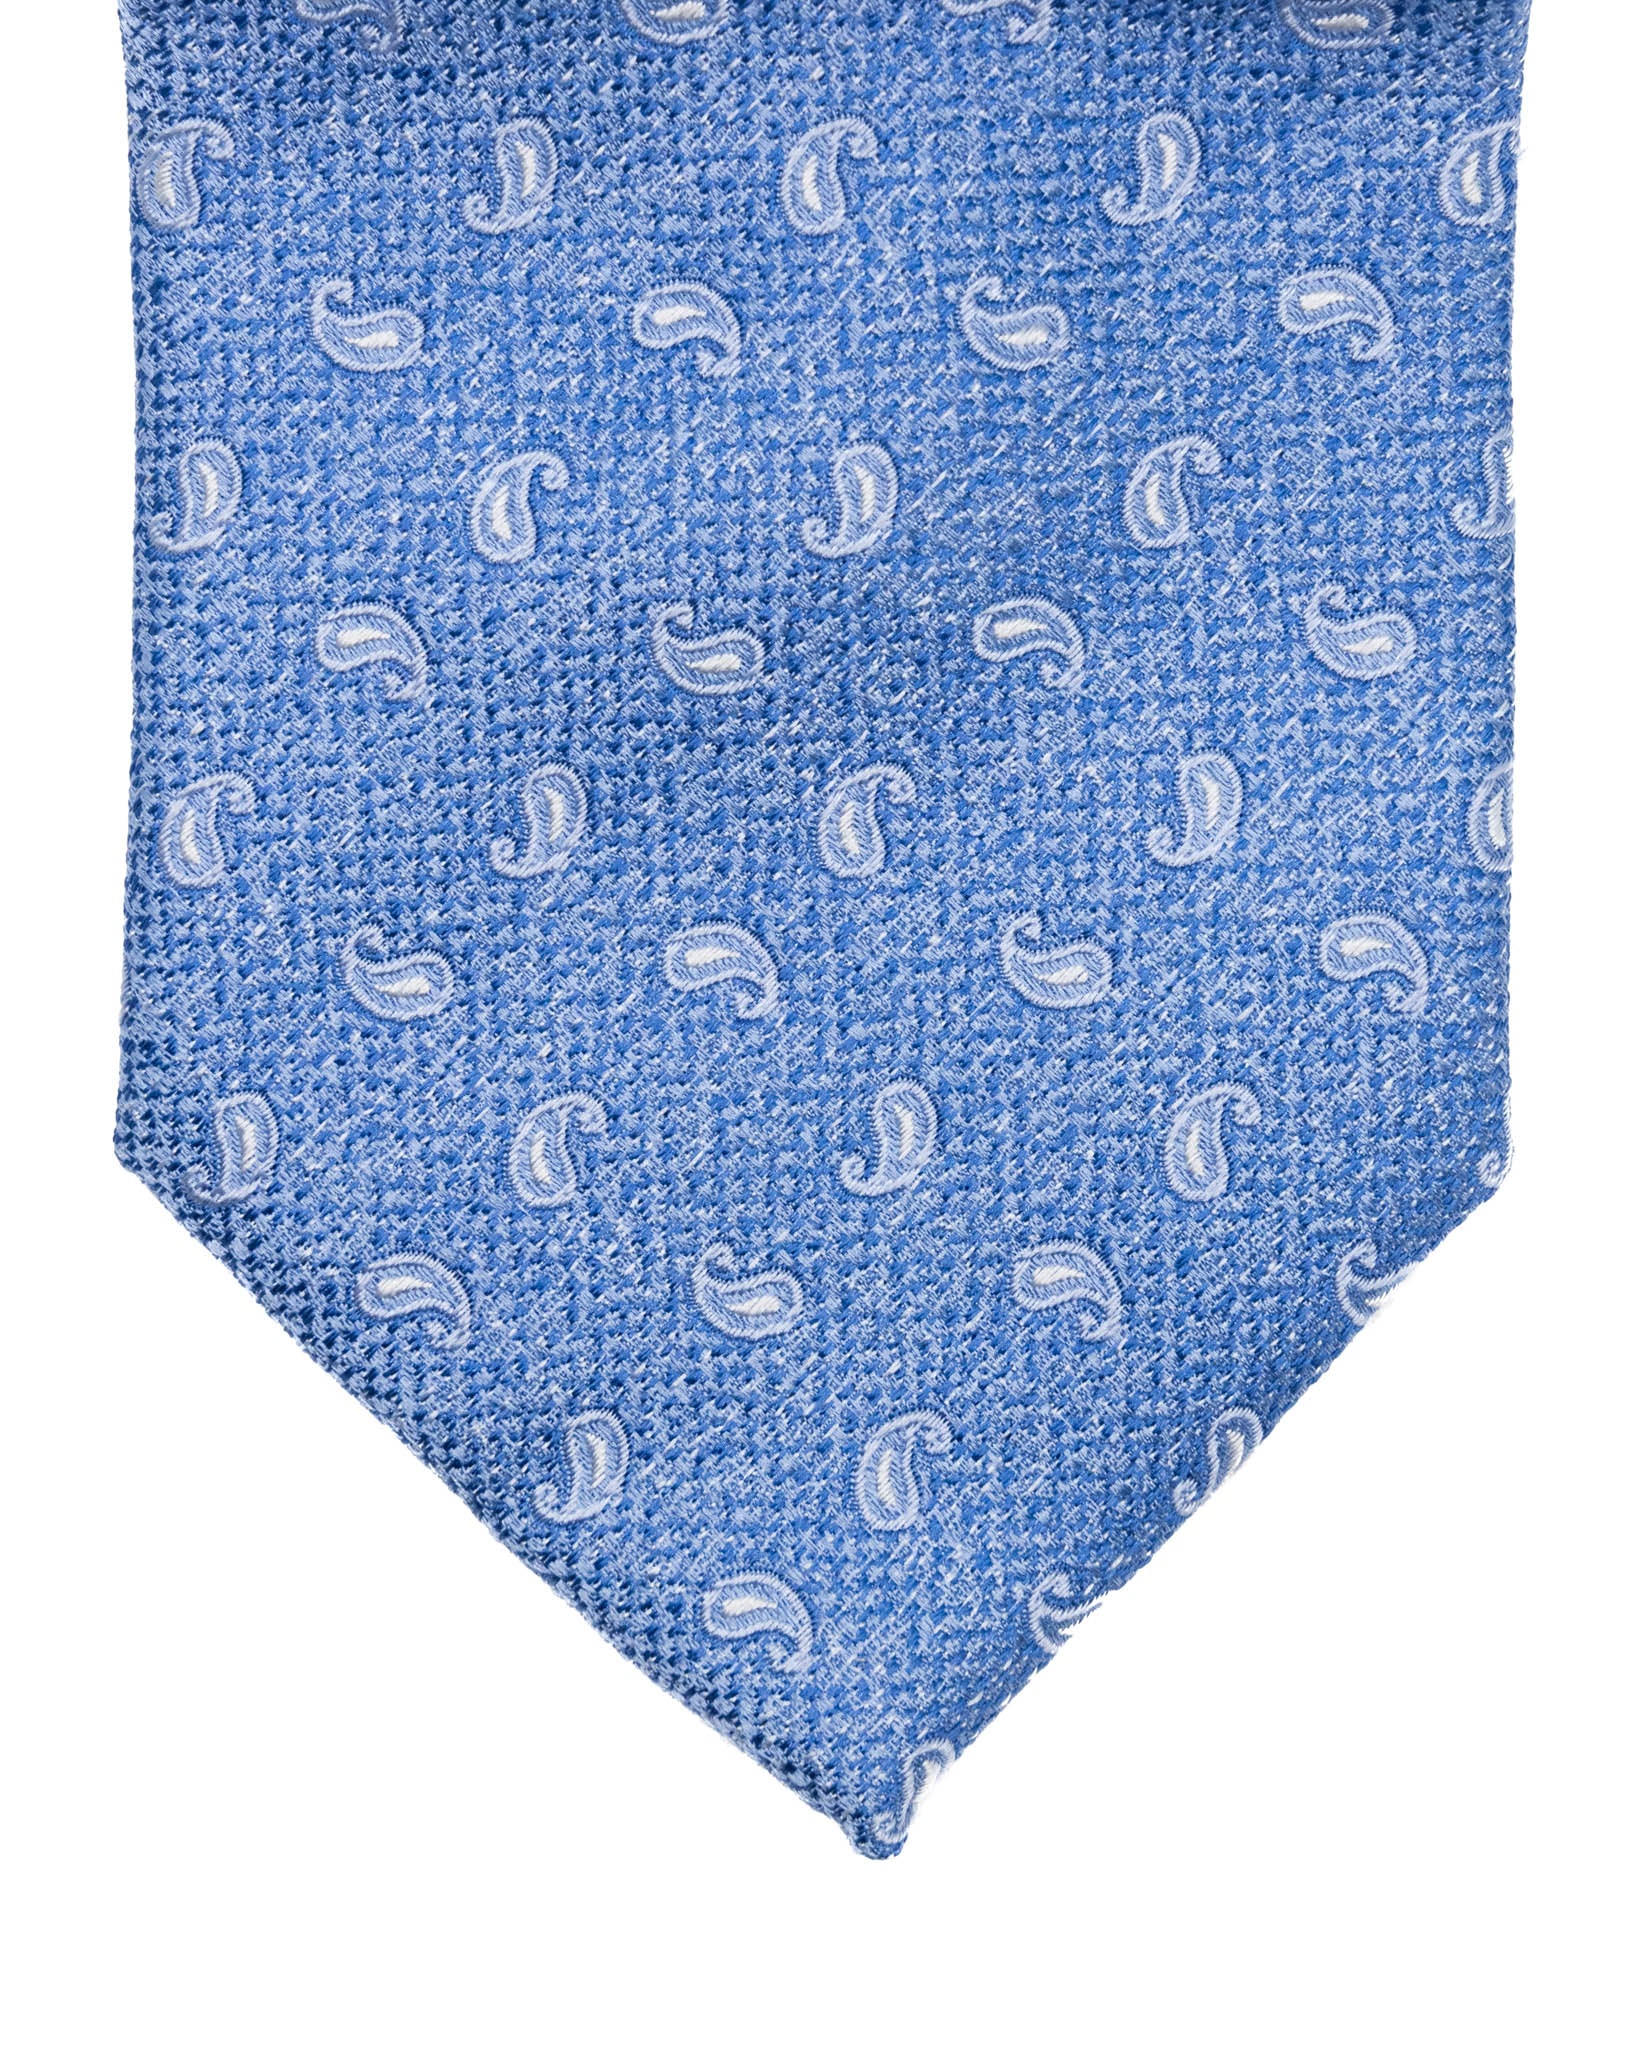 Cravate - en soie gaufrée cachemire bleue